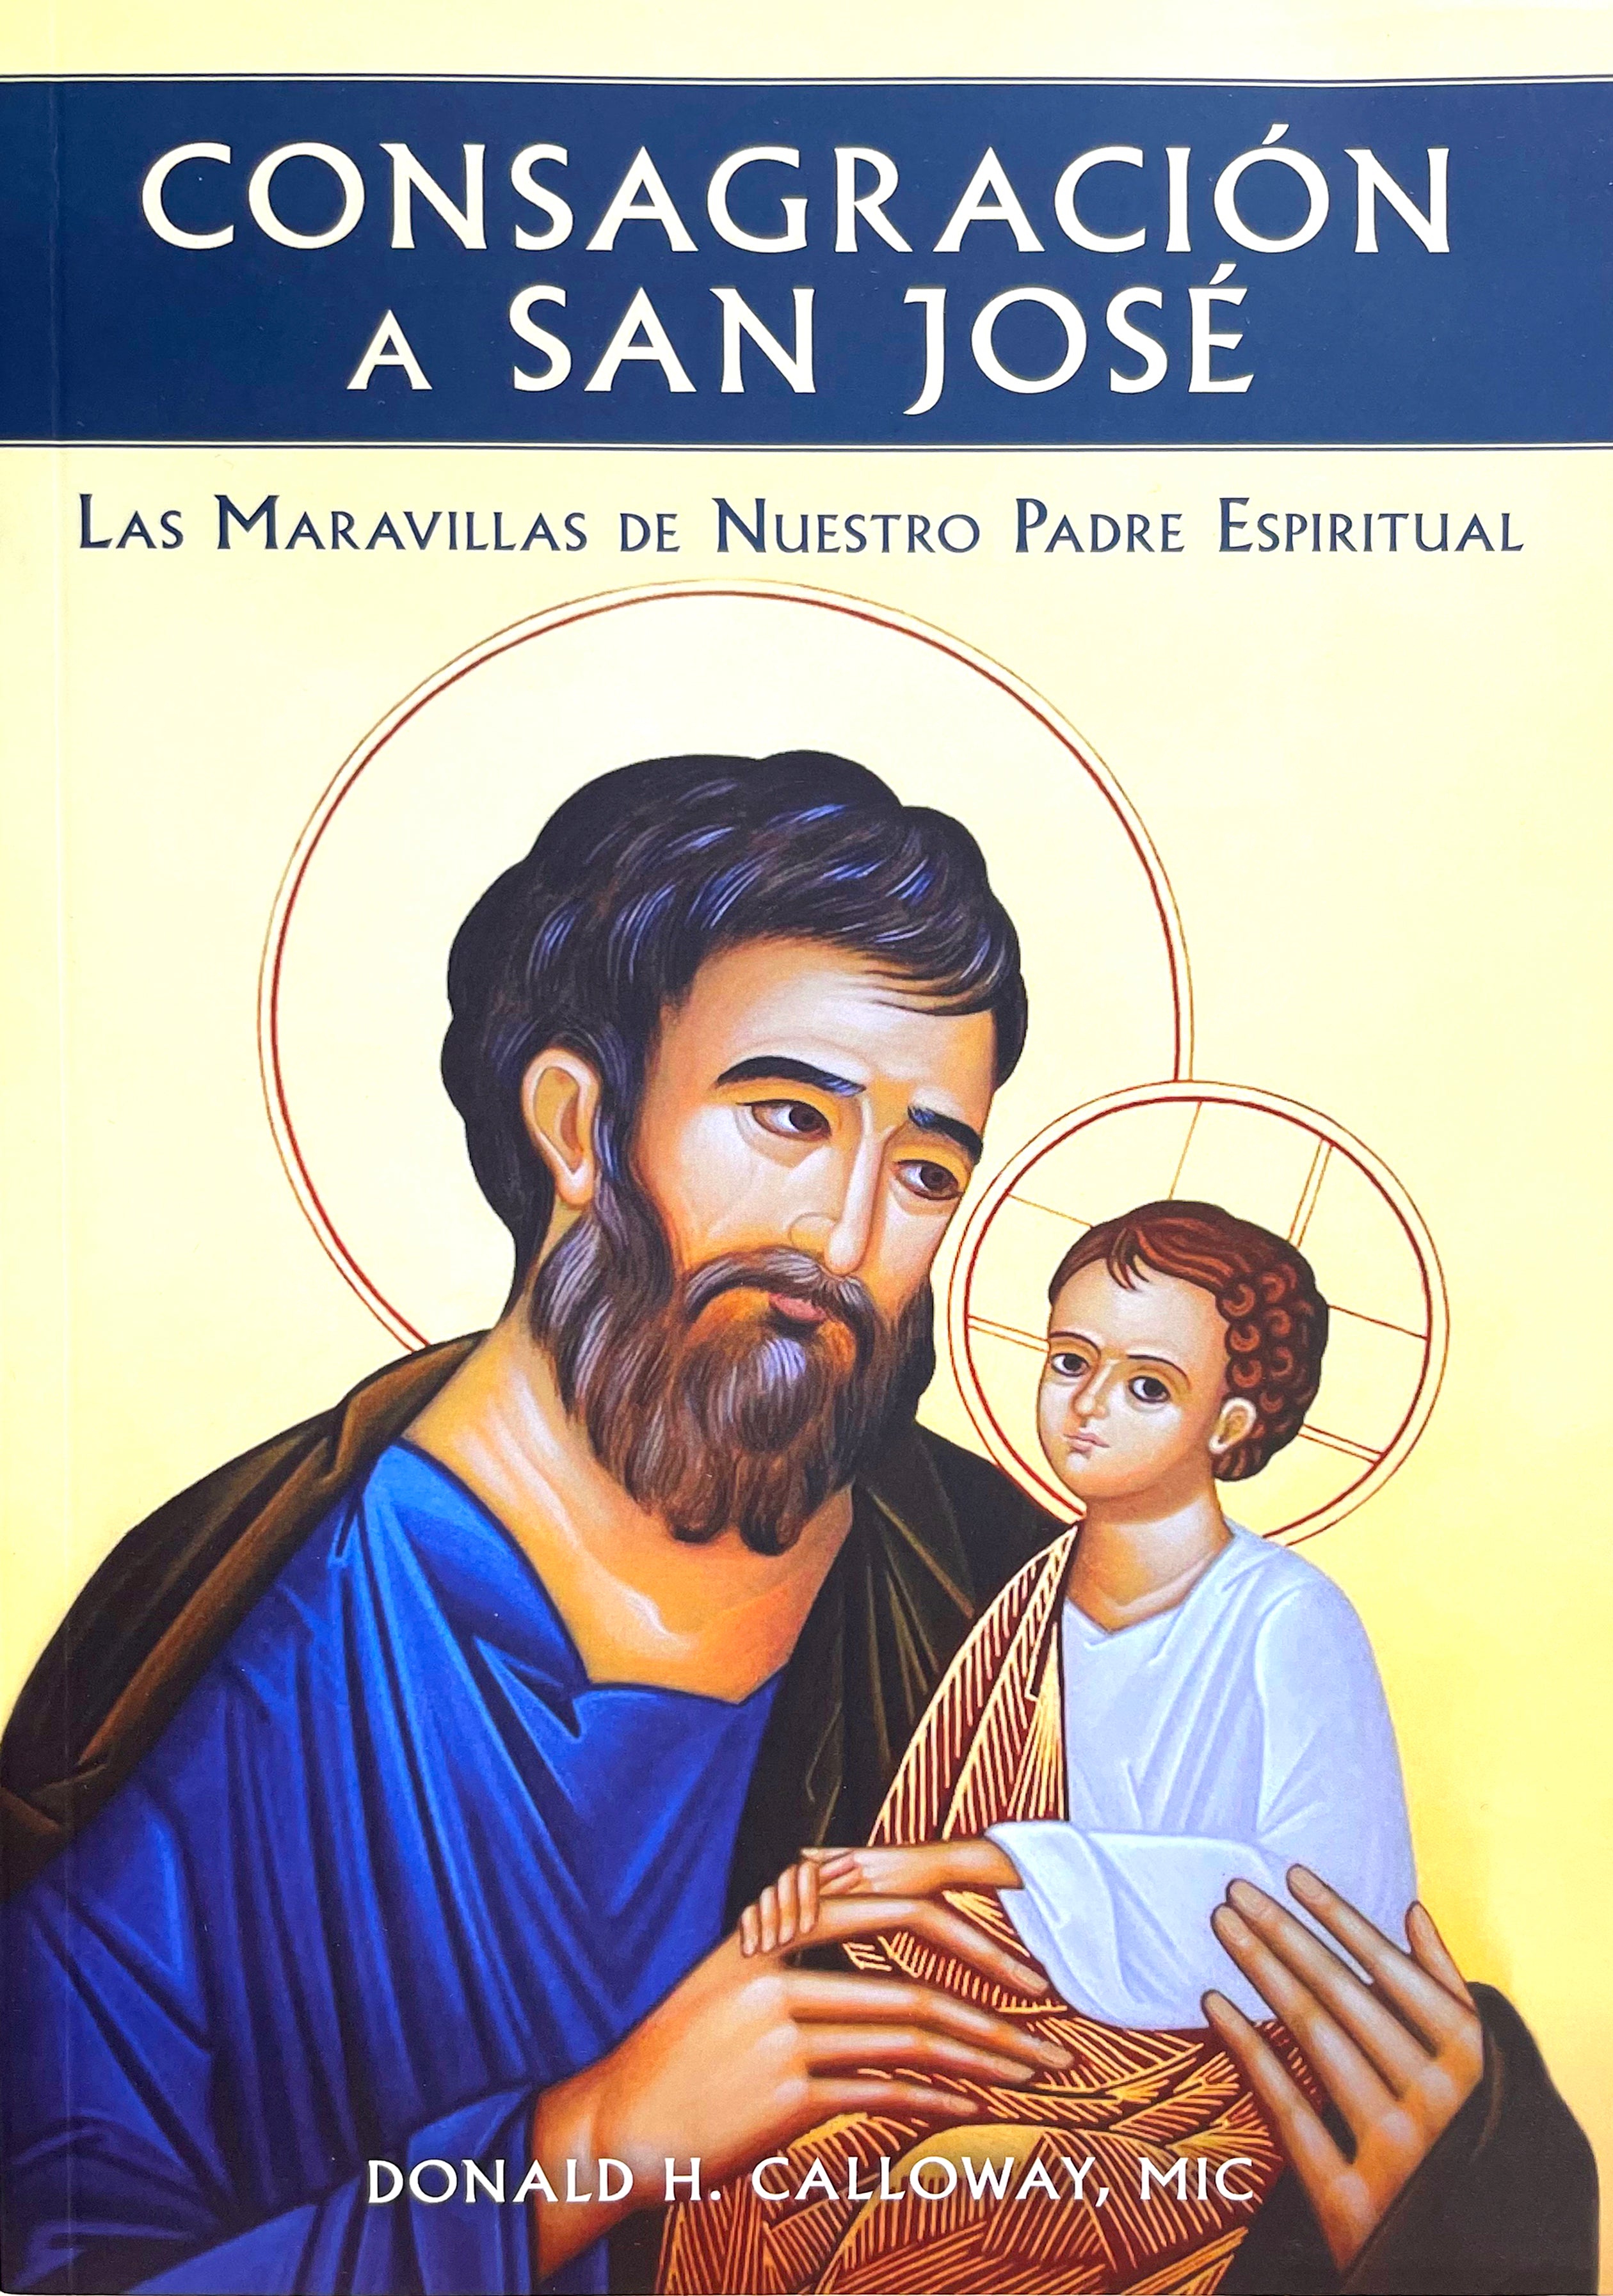 Consagración a San José: Las maravillas de nuestro padre espiritual